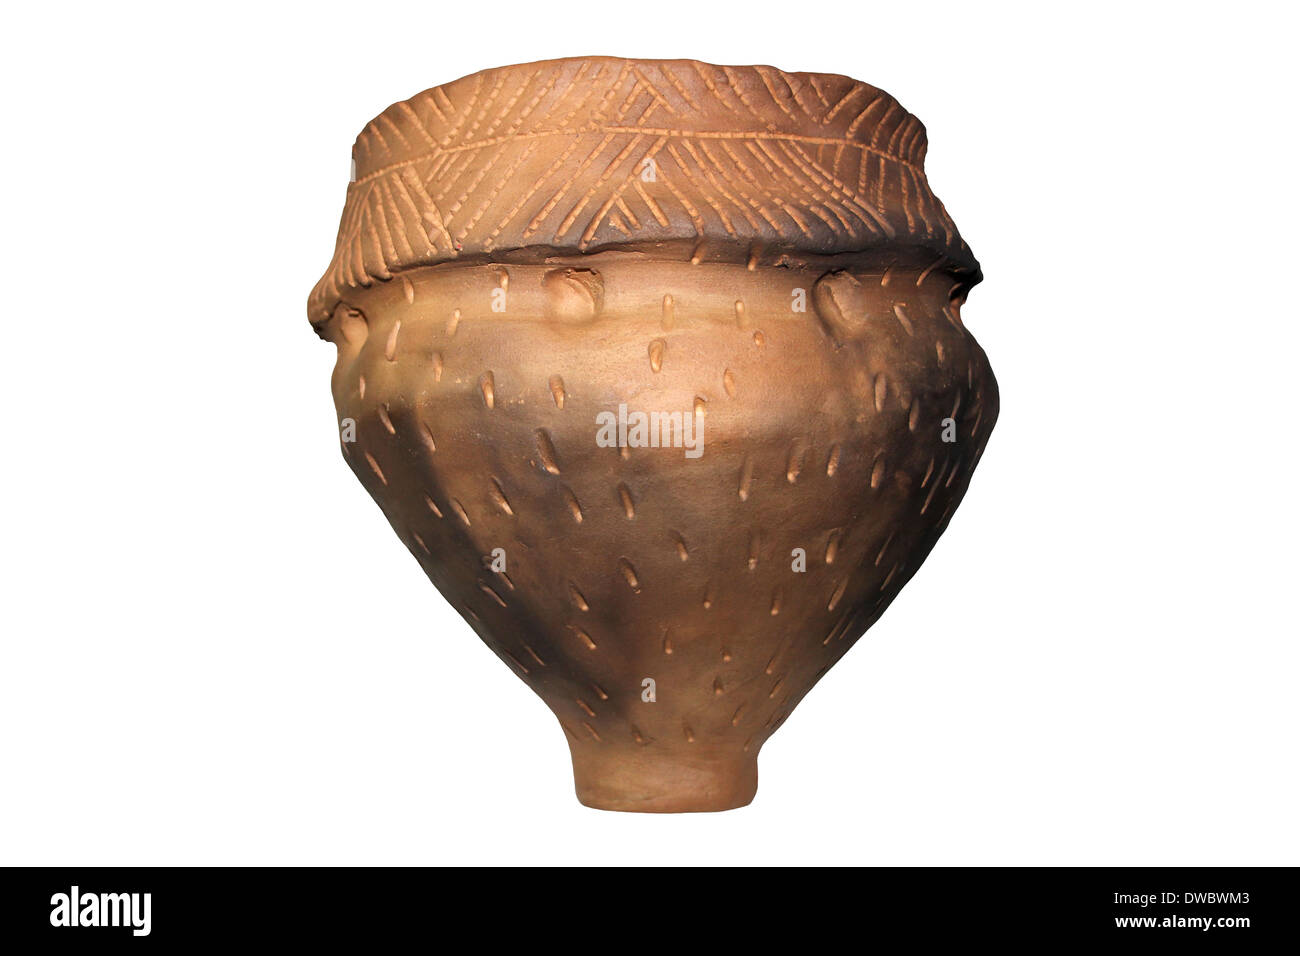 Re-construcción de cerámica de estilo y diseño del Neolítico encontradas en Gran Bretaña Foto de stock